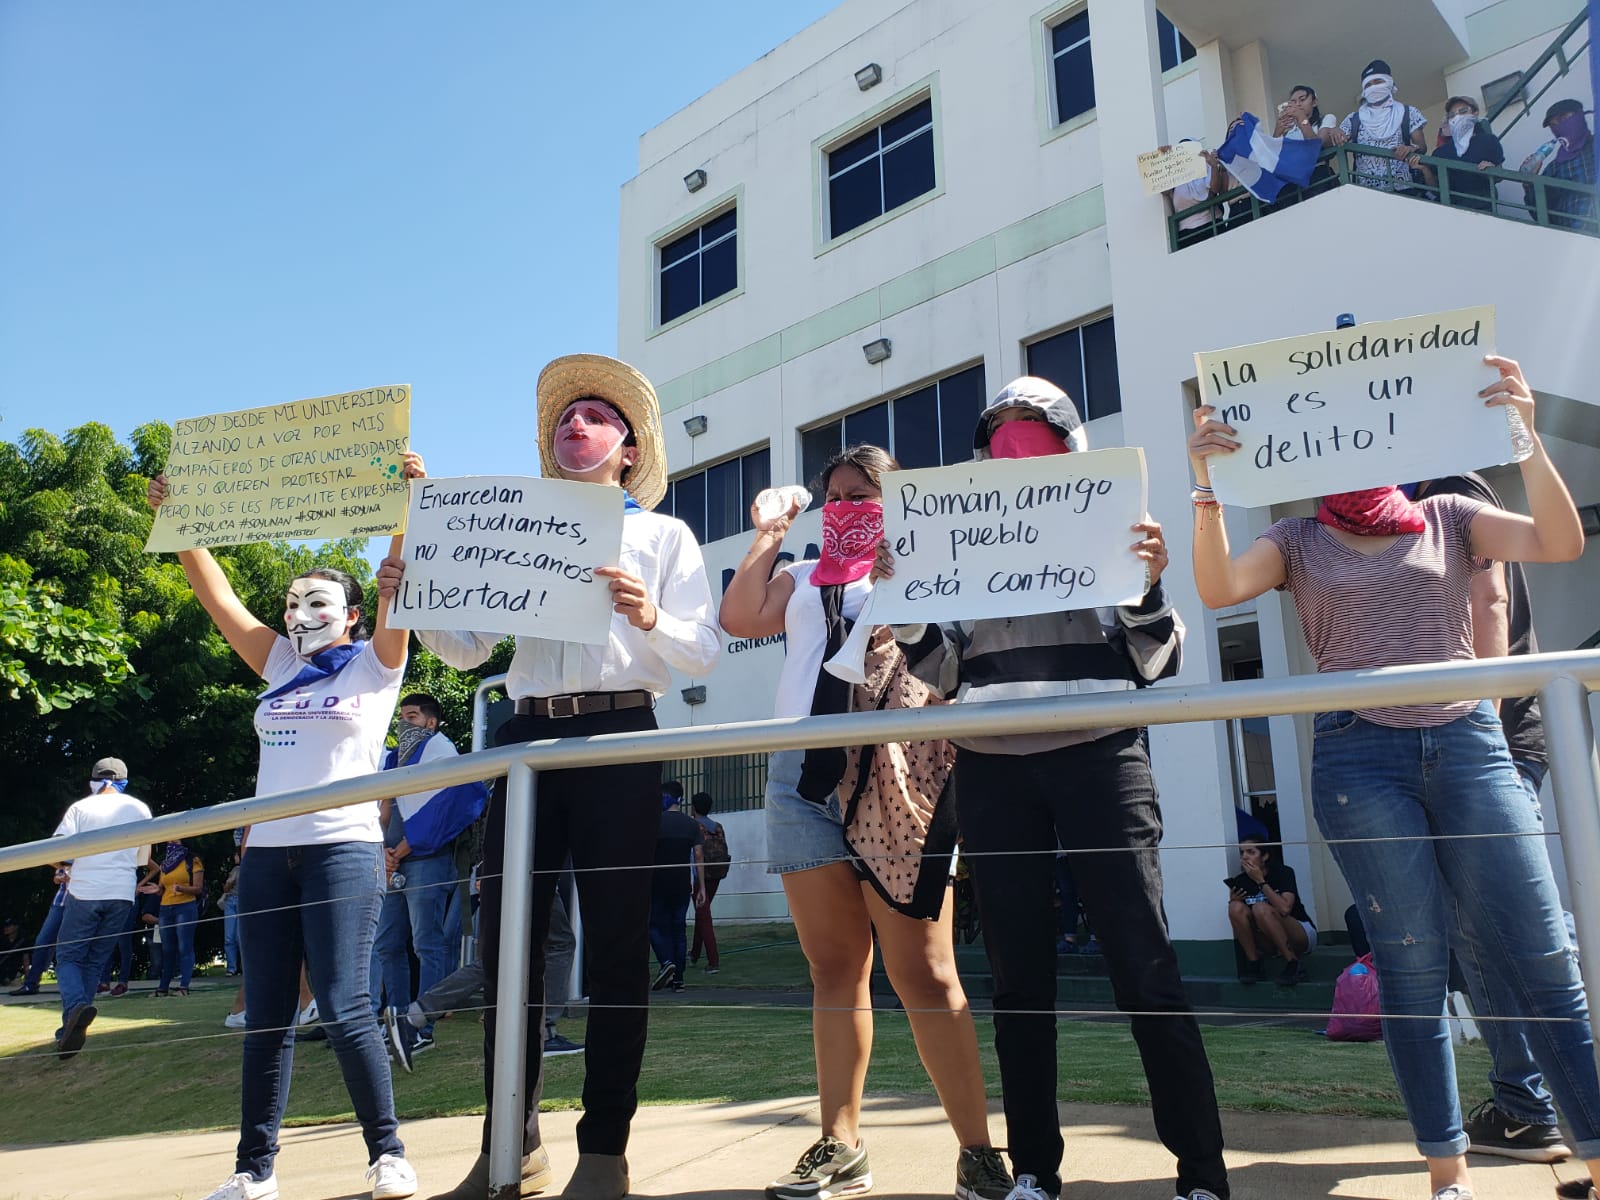 Estudiantes de la UCA protestan: "La solidaridad no es un delito"